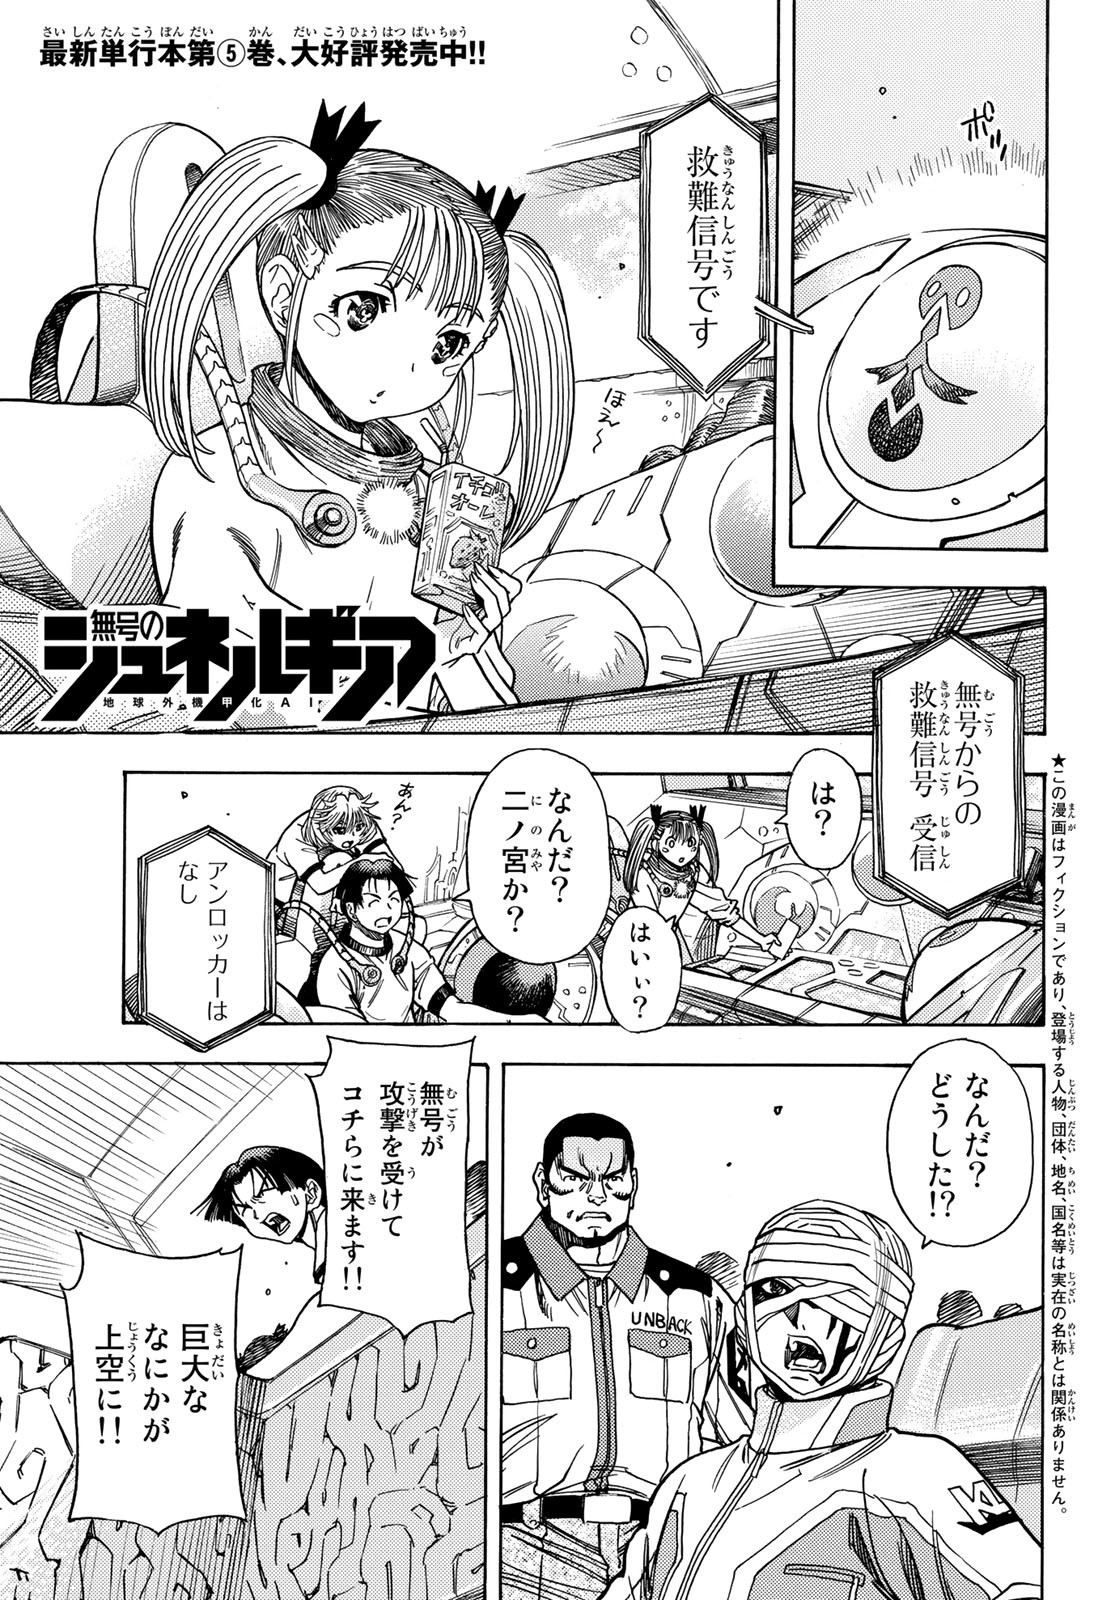 Mugou no Schnell Gear: Chikyuugai Kisouka AI - Chapter 35 - Page 1